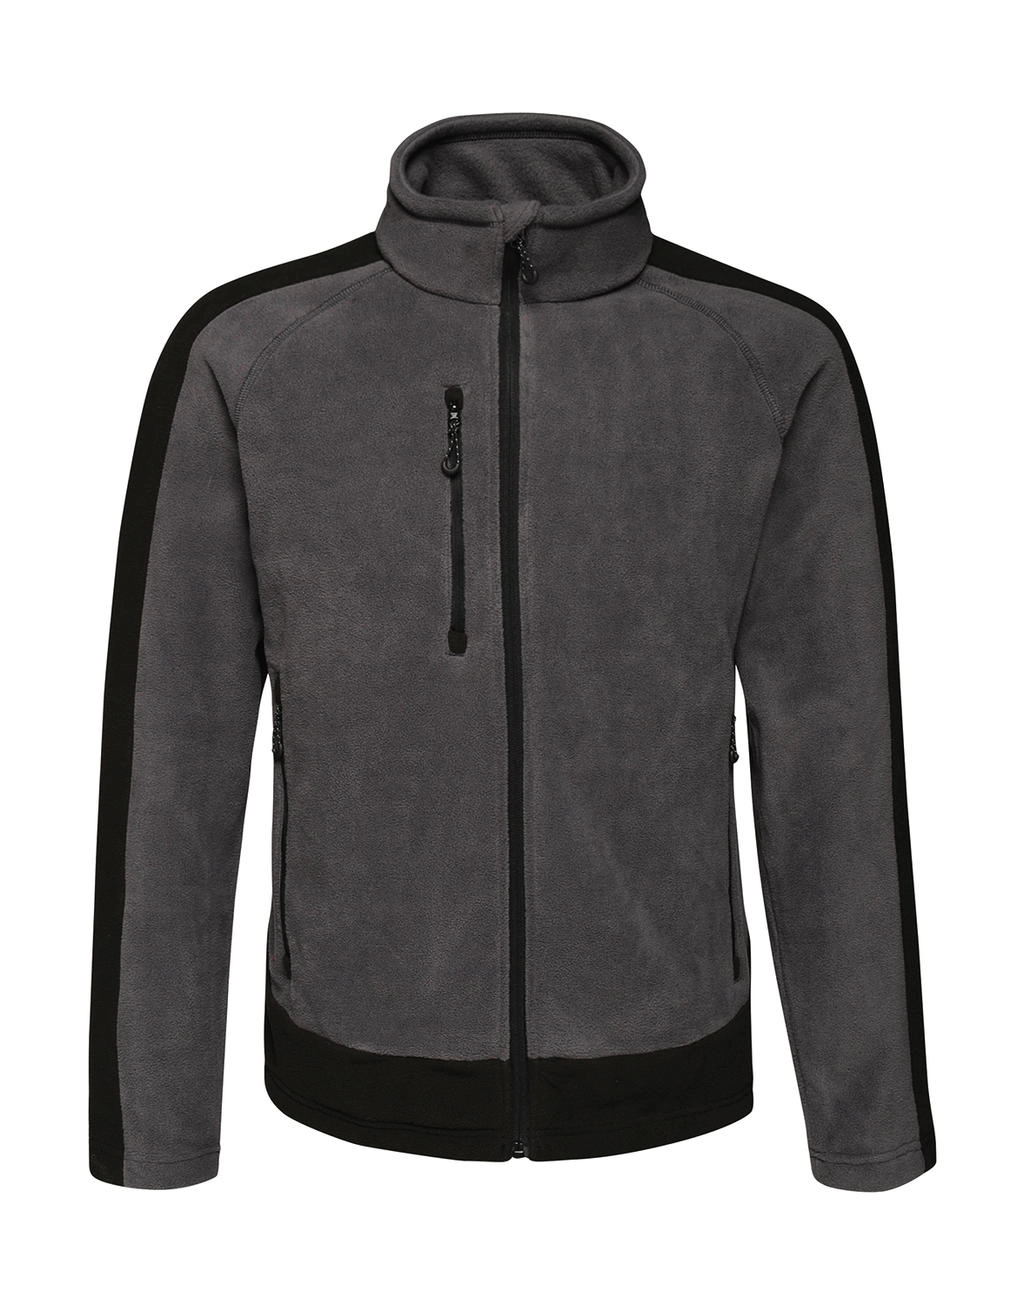 Contrast 300G Fleece zum Besticken und Bedrucken in der Farbe Seal Grey/Black mit Ihren Logo, Schriftzug oder Motiv.